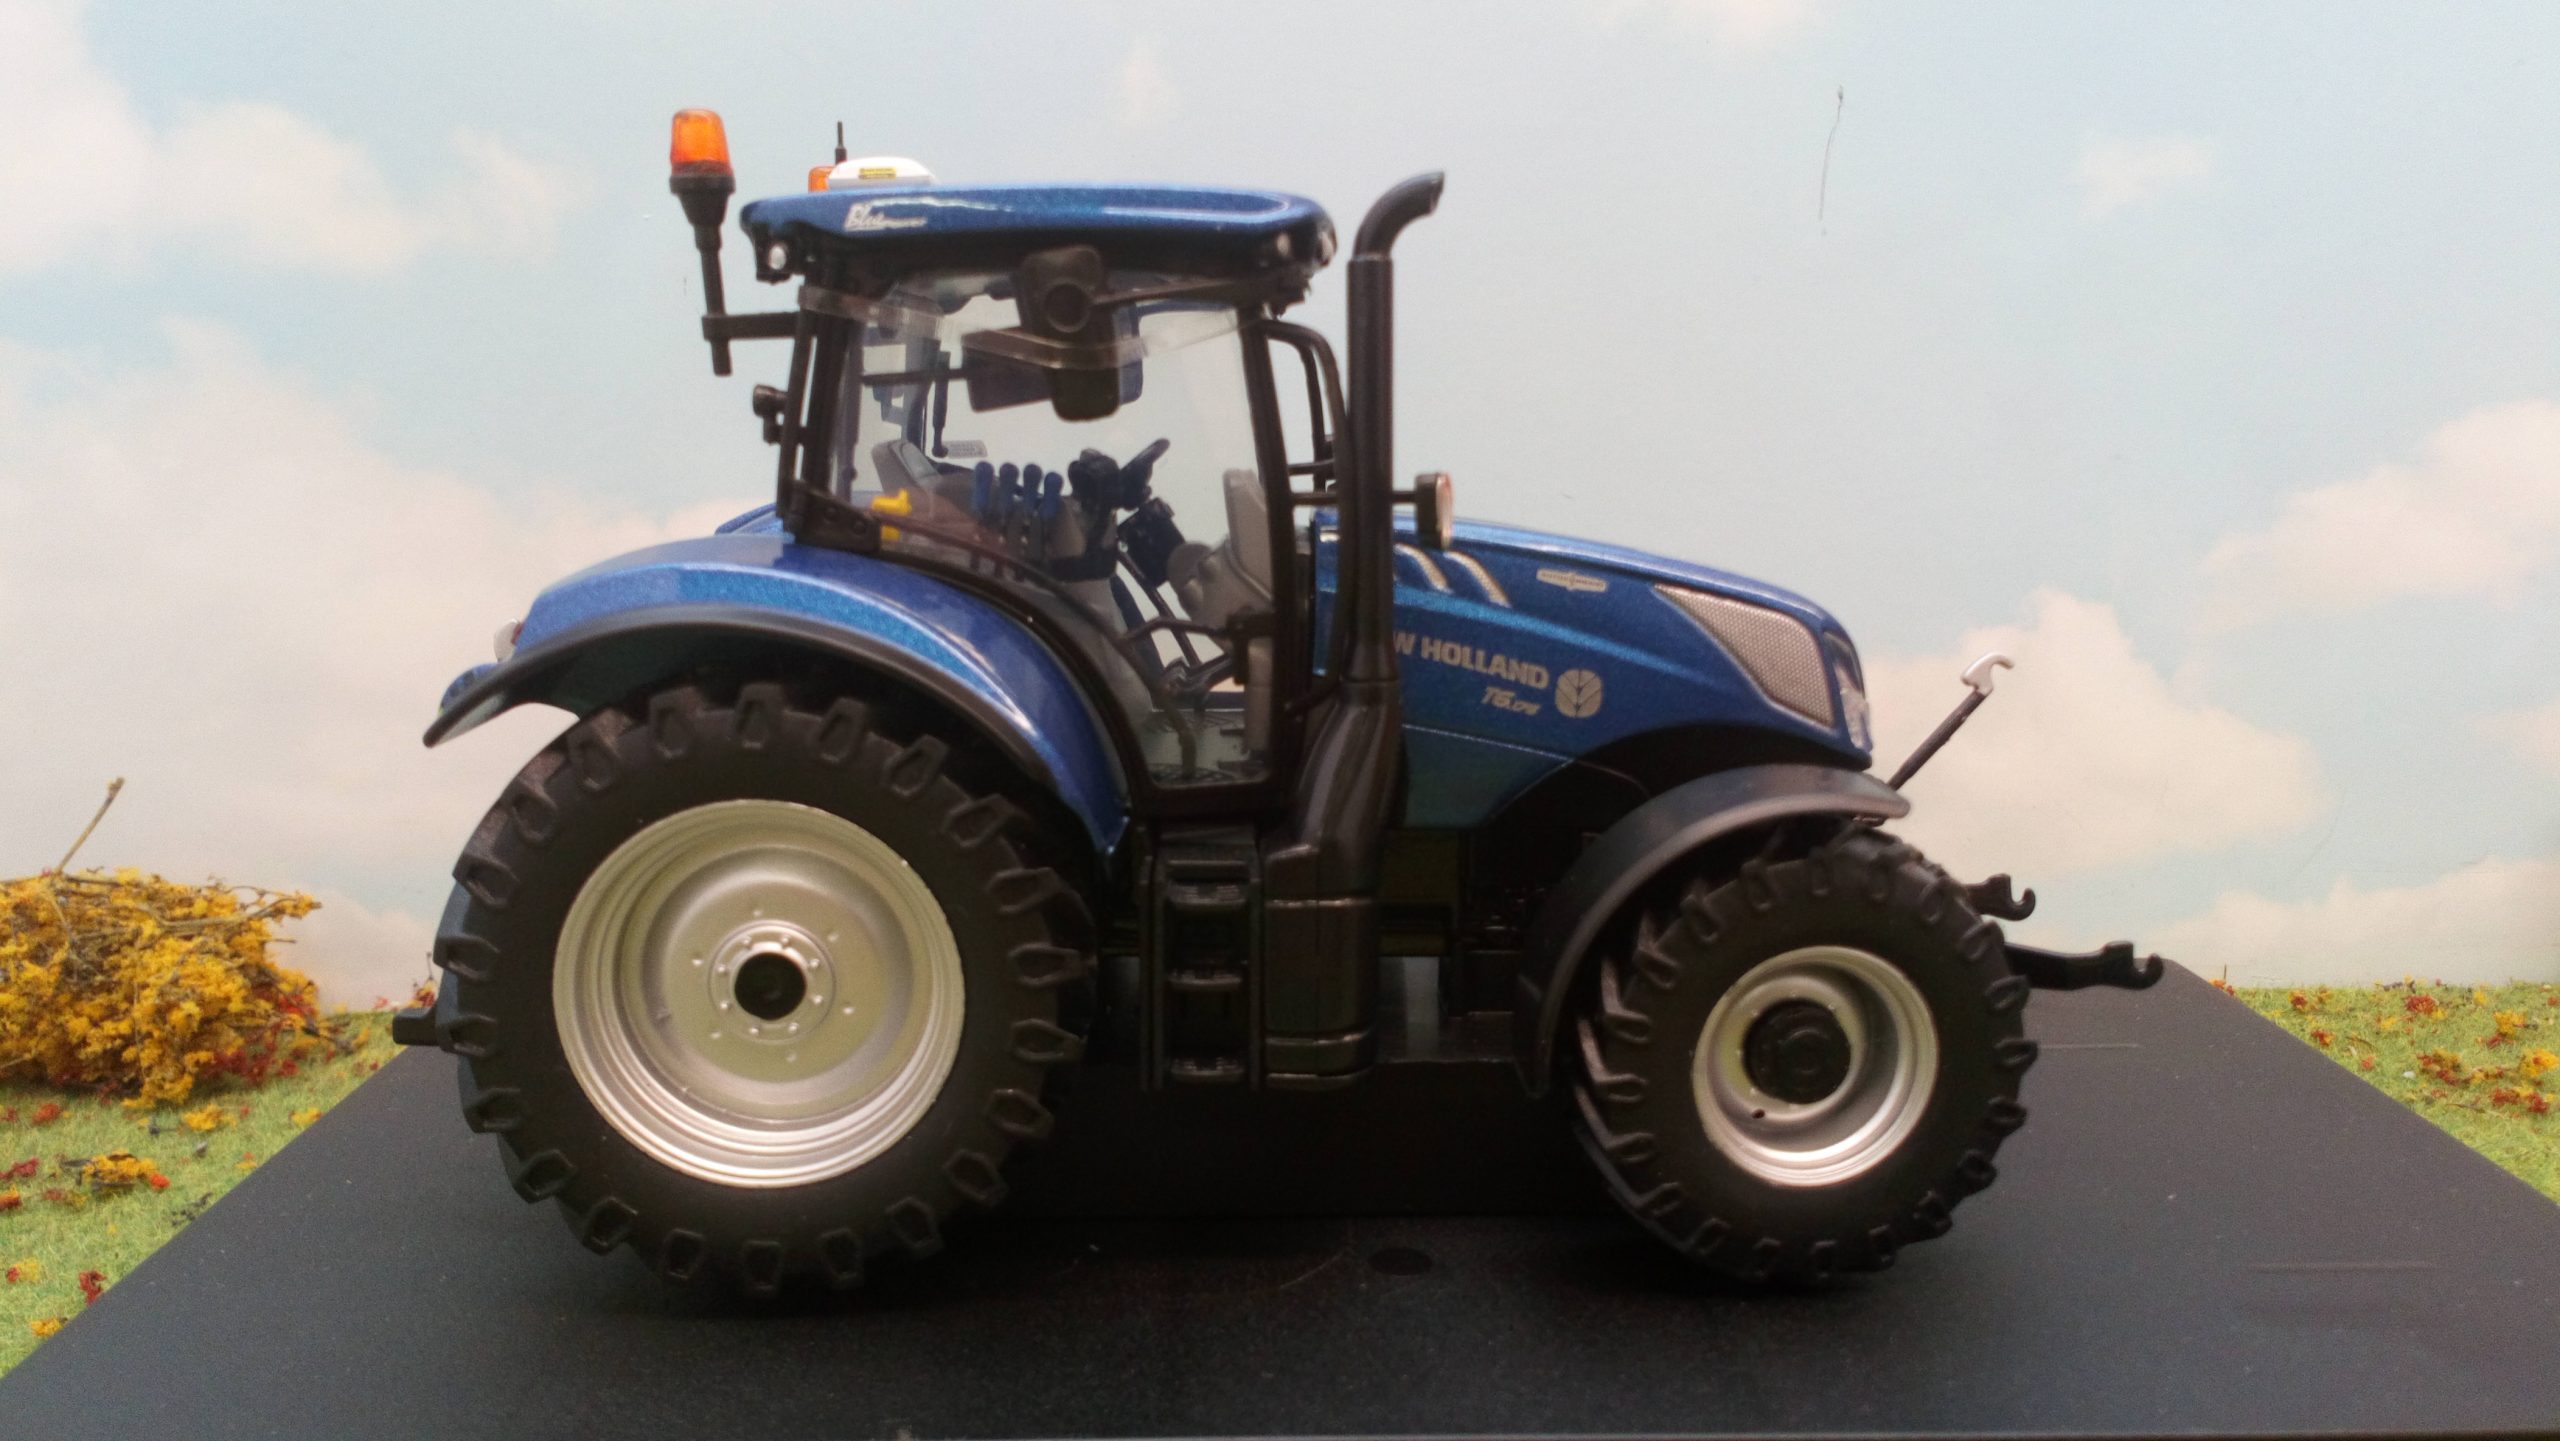 UNIVERSAL HOBBIES UH 4959 New Holland Traktor T6.175 Blue Power echelle 1:32 